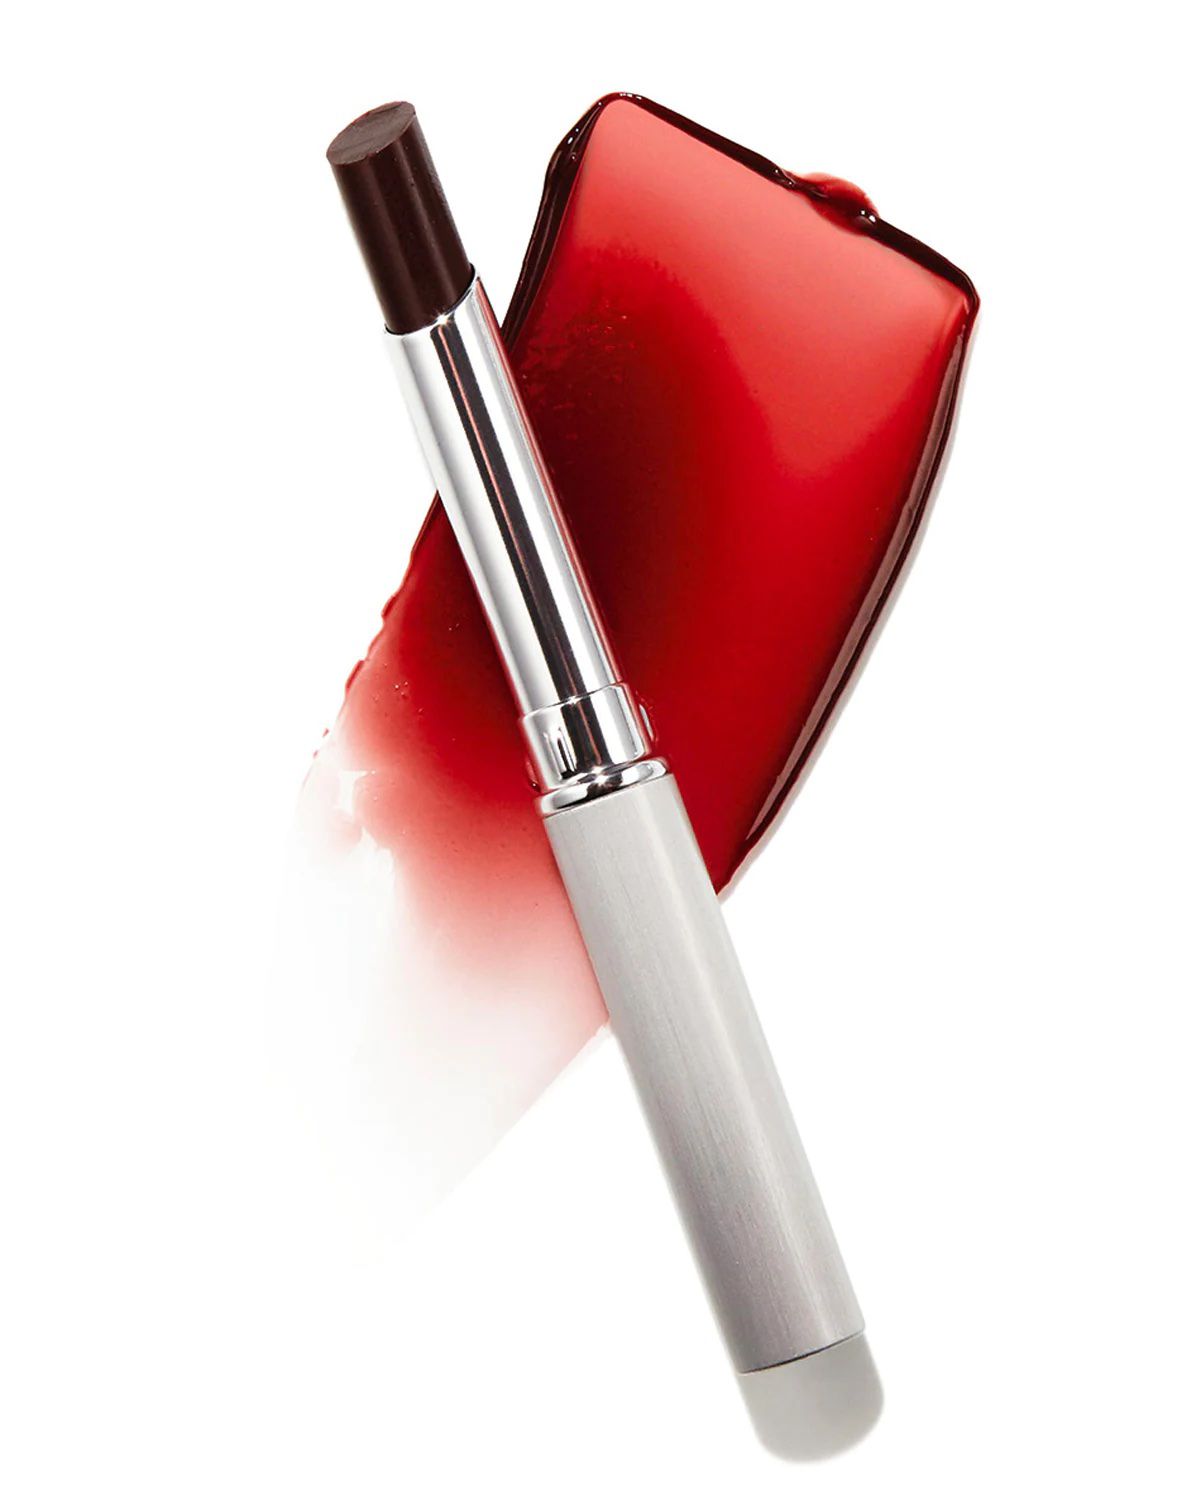 l'immagine di un tubetto di Clinique Almost Lipstick nella tonalità Black Honey, sovrapposto a un campione del rossetto